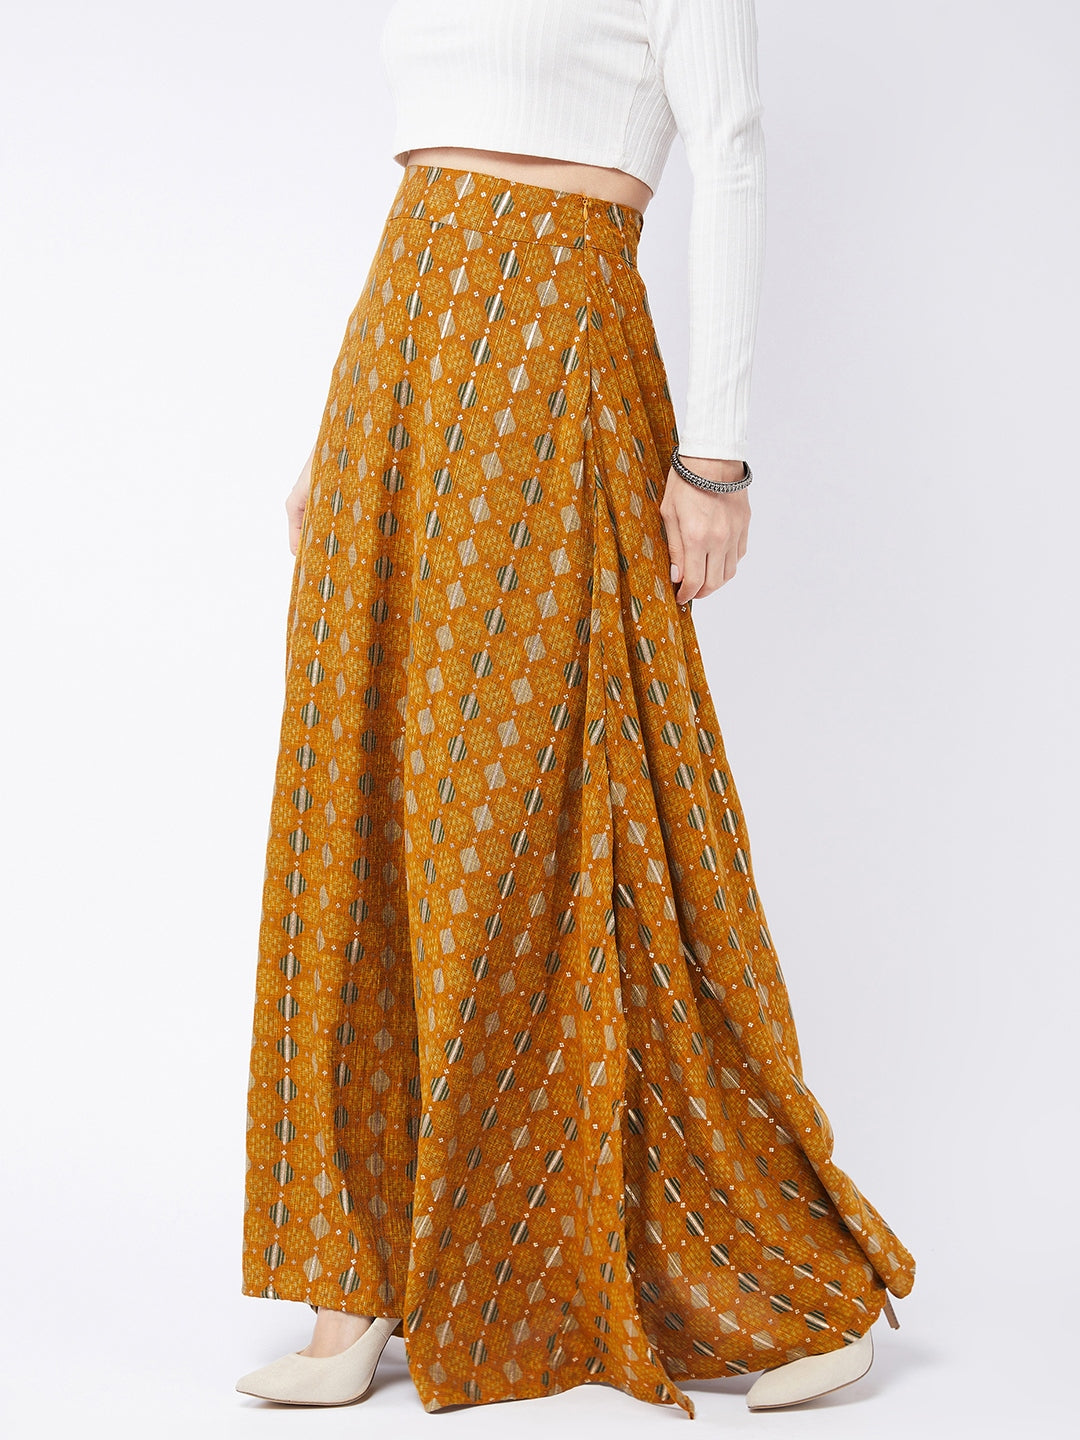 Dijon Yellow Side Slit Long Skirt